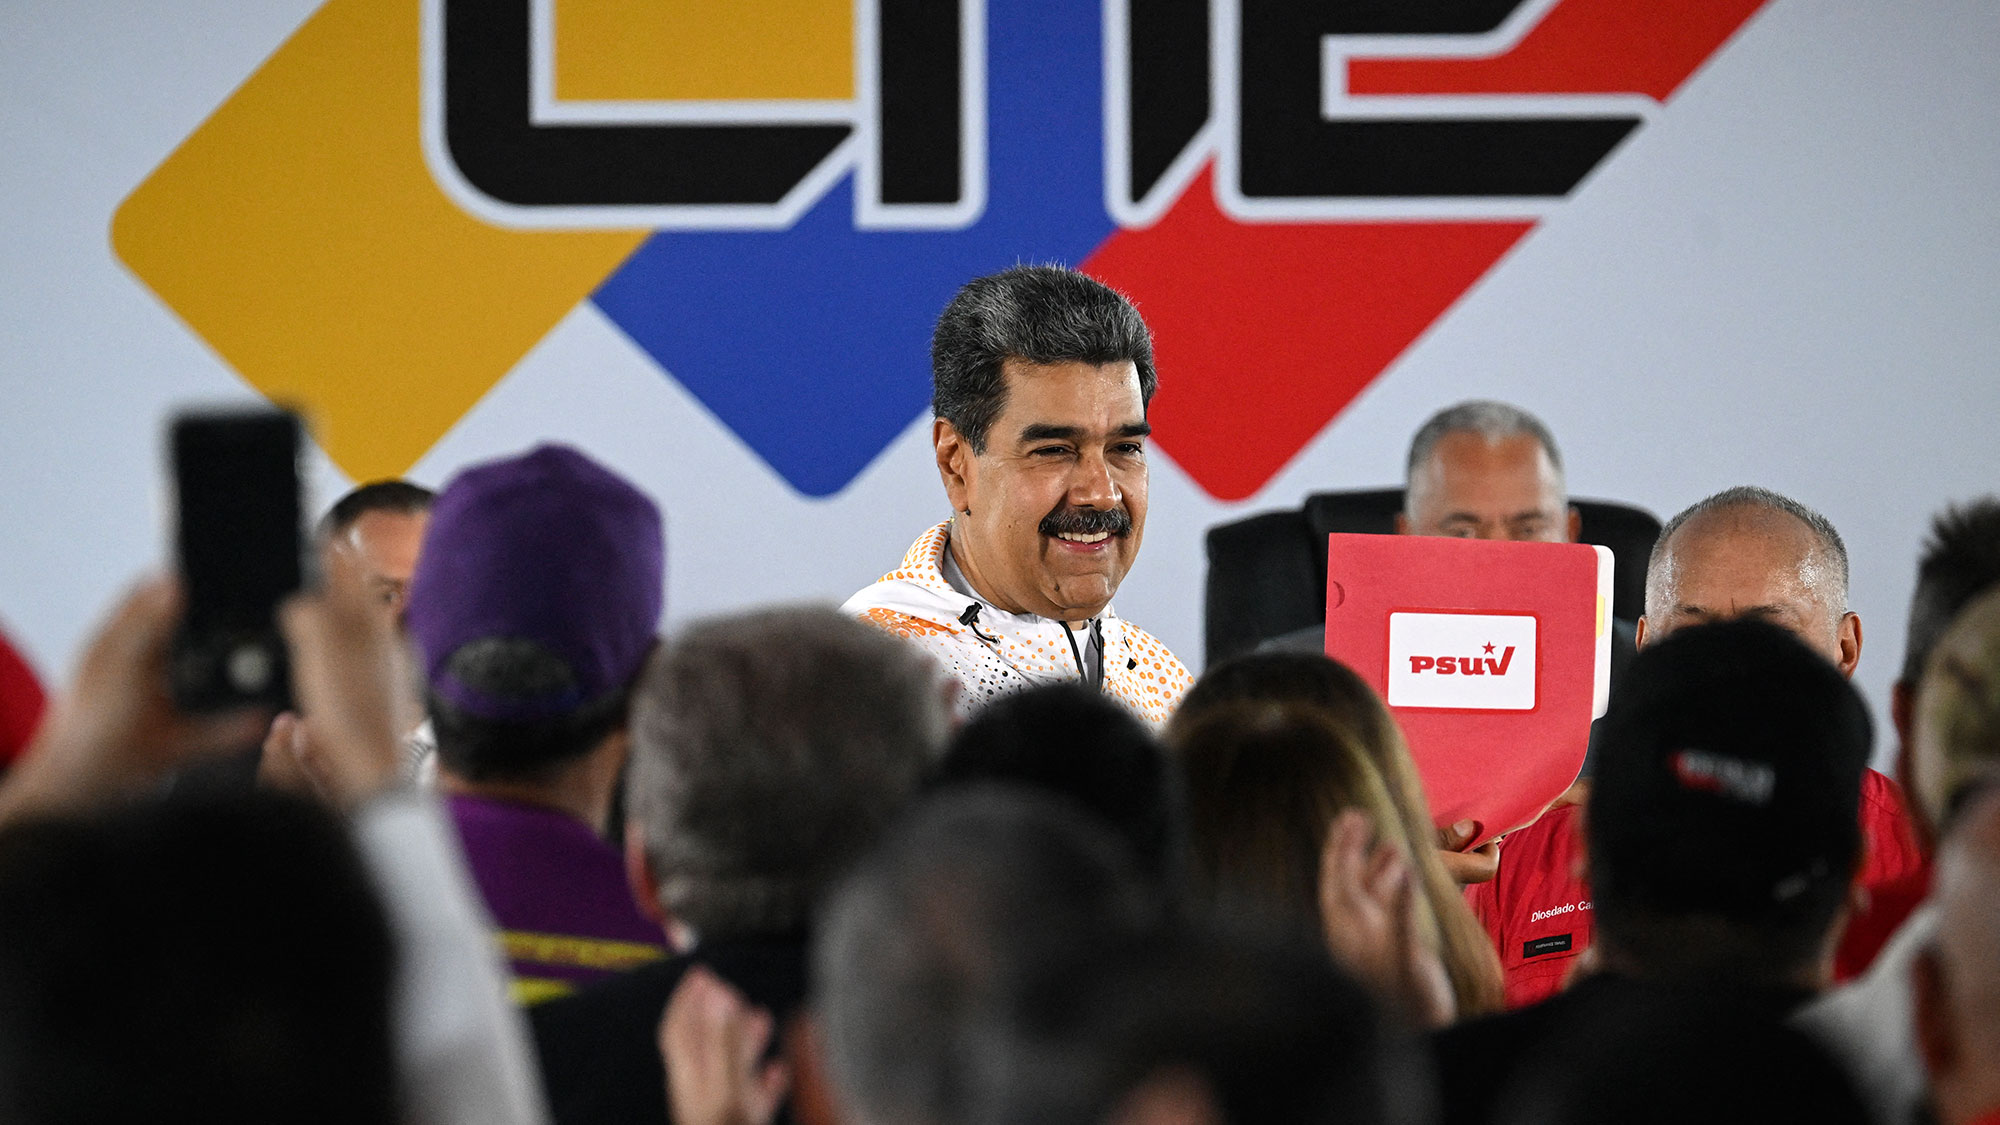 Cárcel, inhabilitación política y disolución de organiz...a ley “antifascista” que impulsa el Gobierno de
Venezuela?